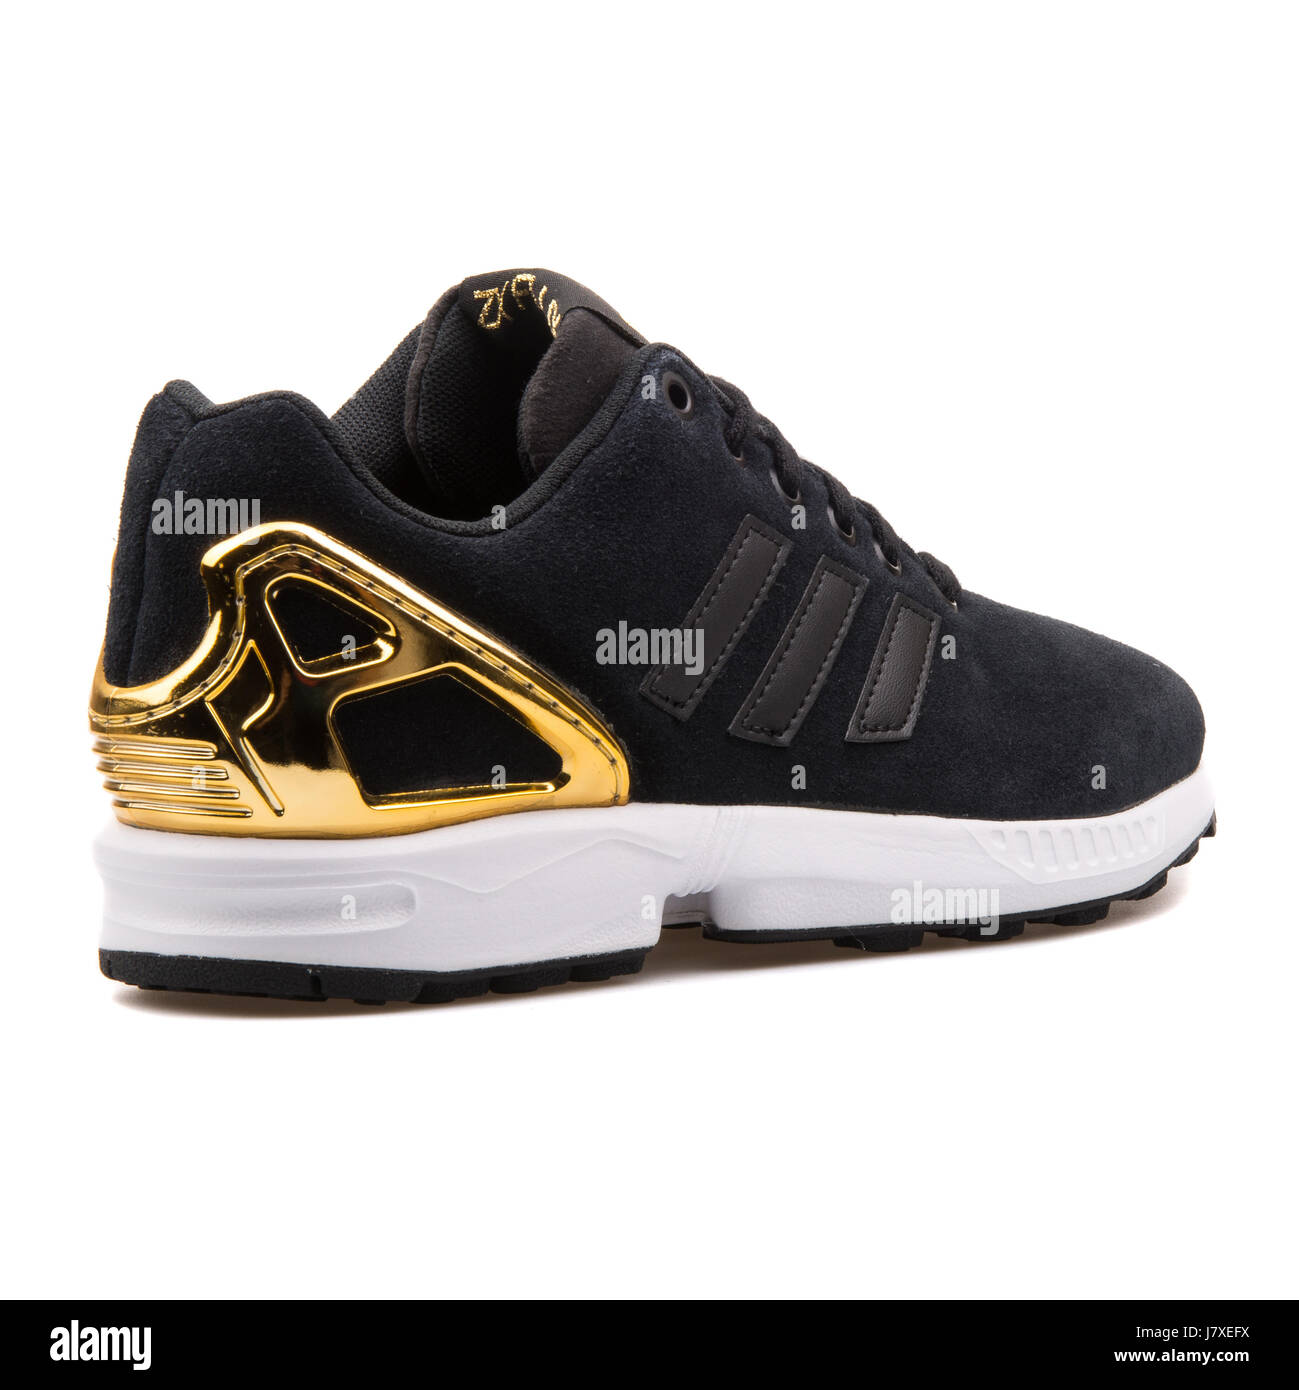 Adidas ZX Flux W negro y oro Mujer Sneakers - B35319 Fotografía de stock -  Alamy